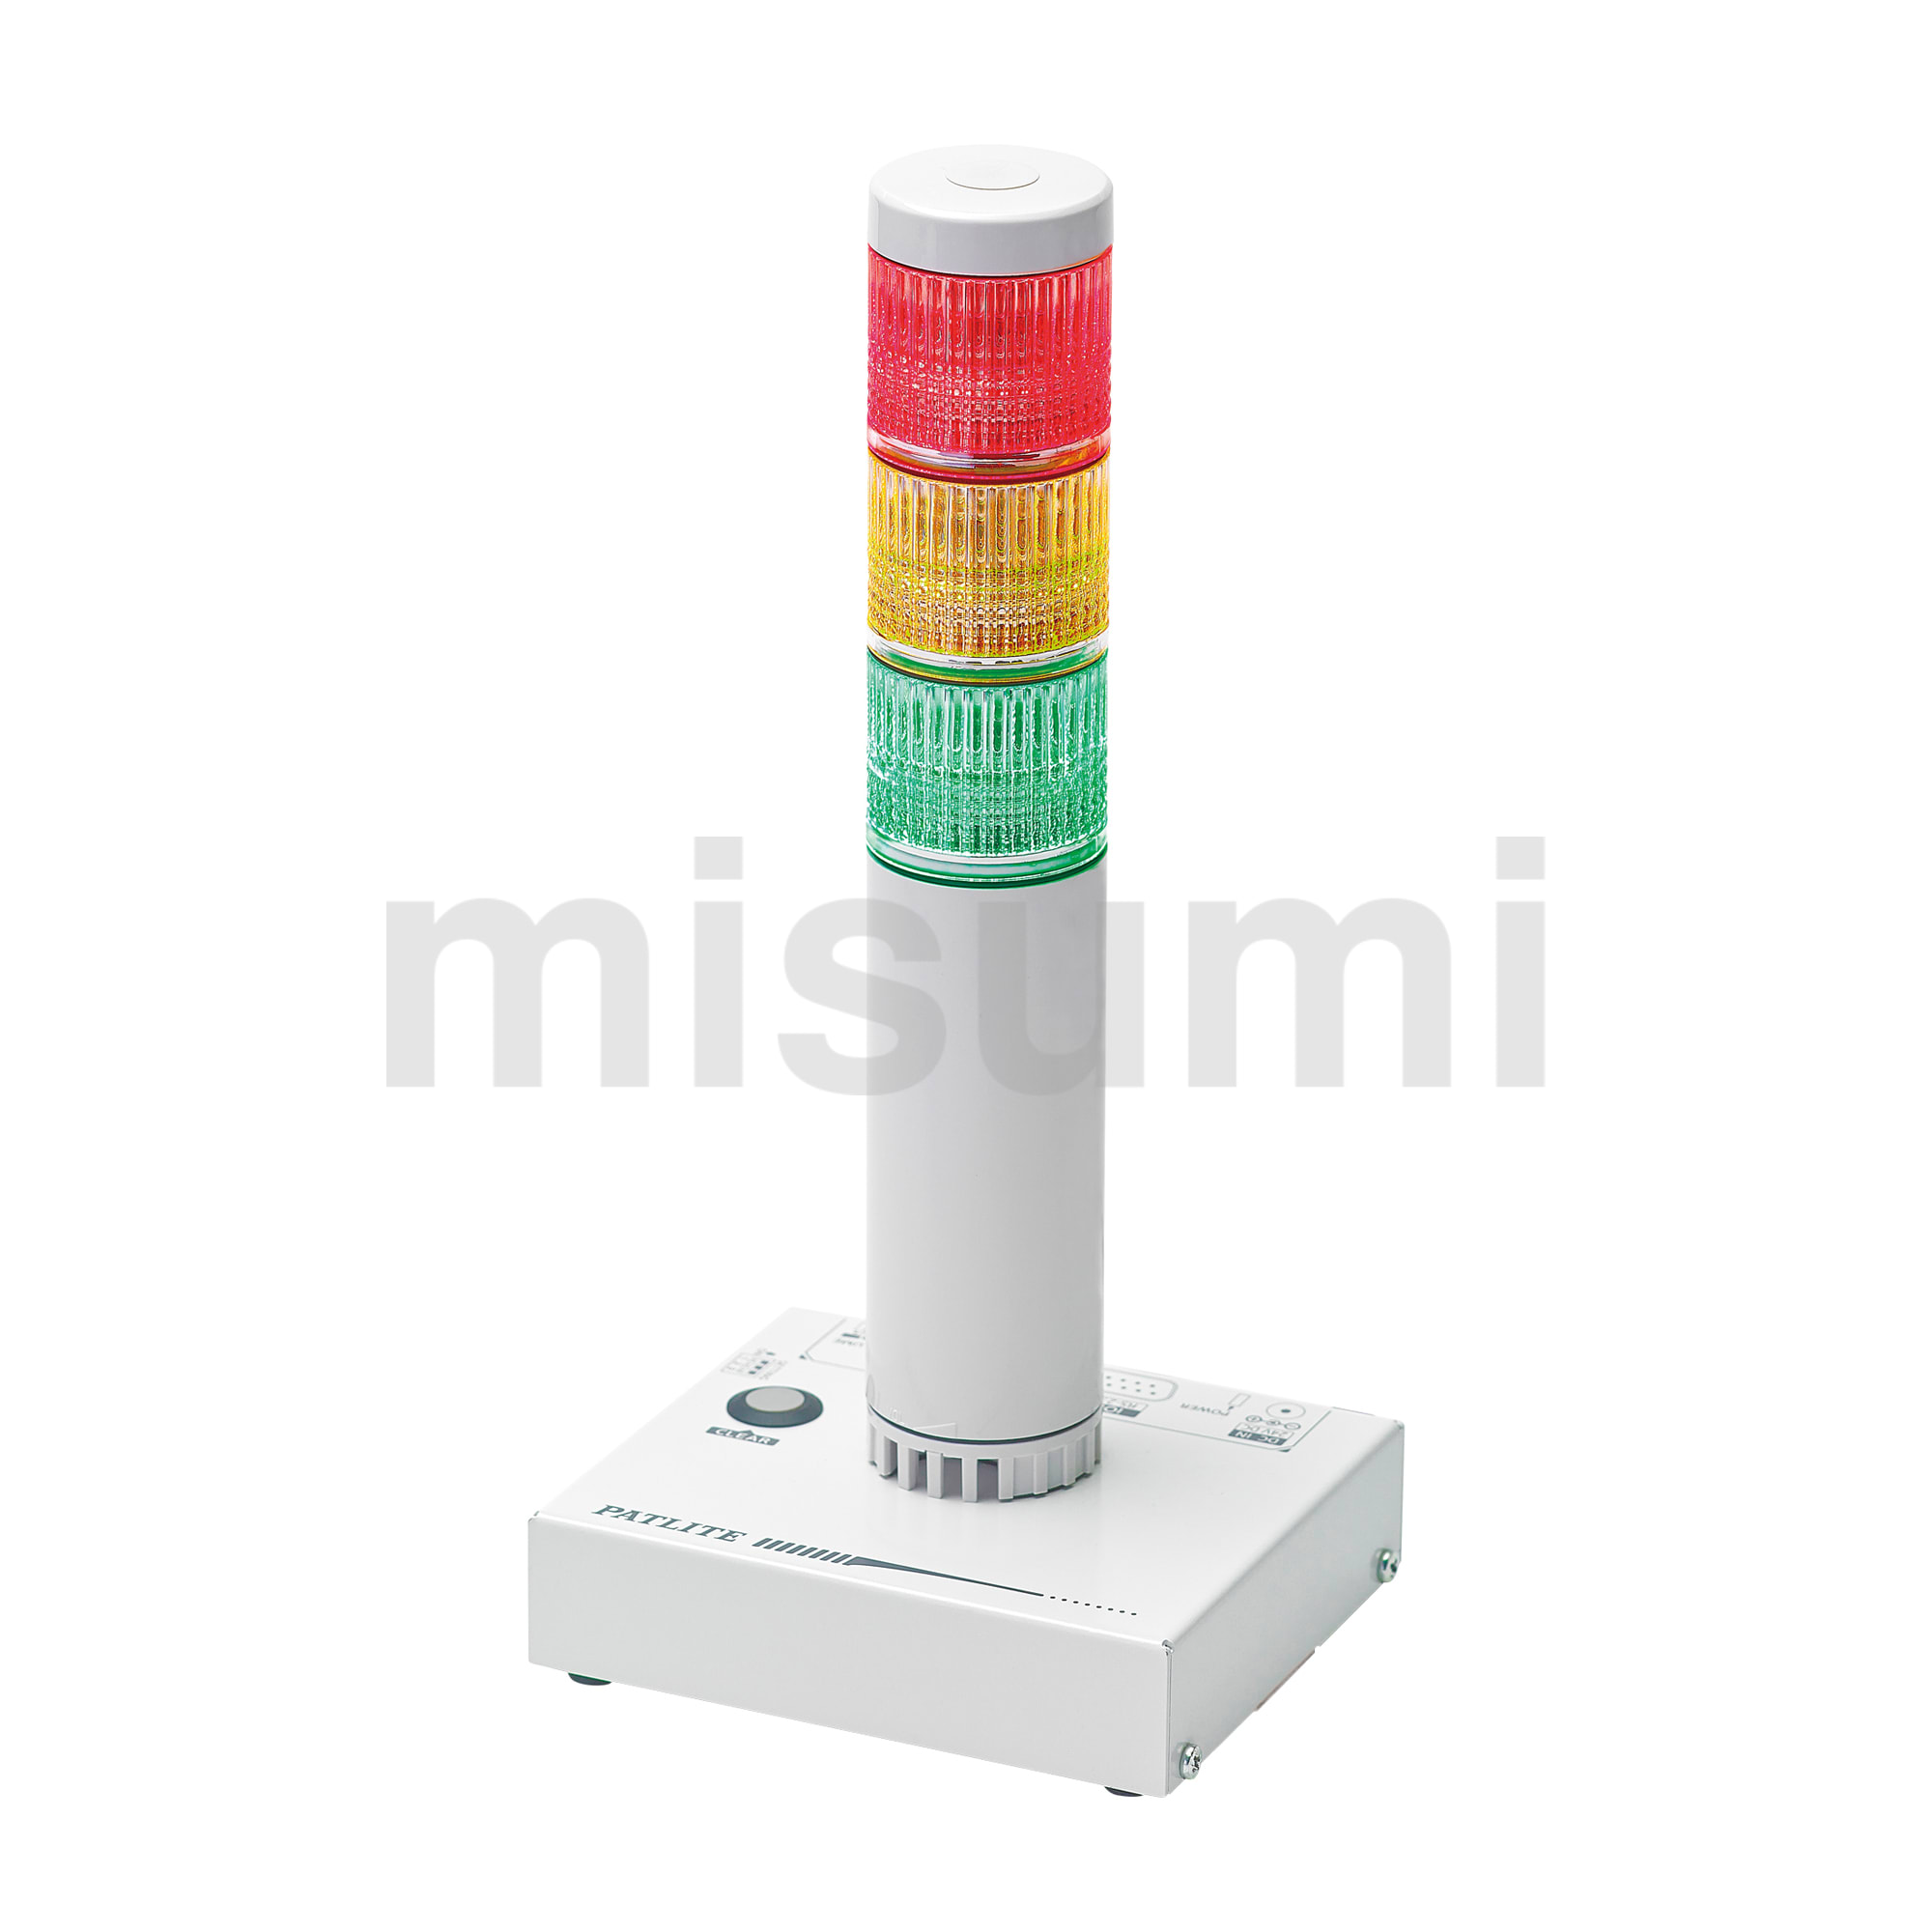 ネットワーク監視表示灯 信号灯付インターフェースコンバータ | パトライト | MISUMI(ミスミ)